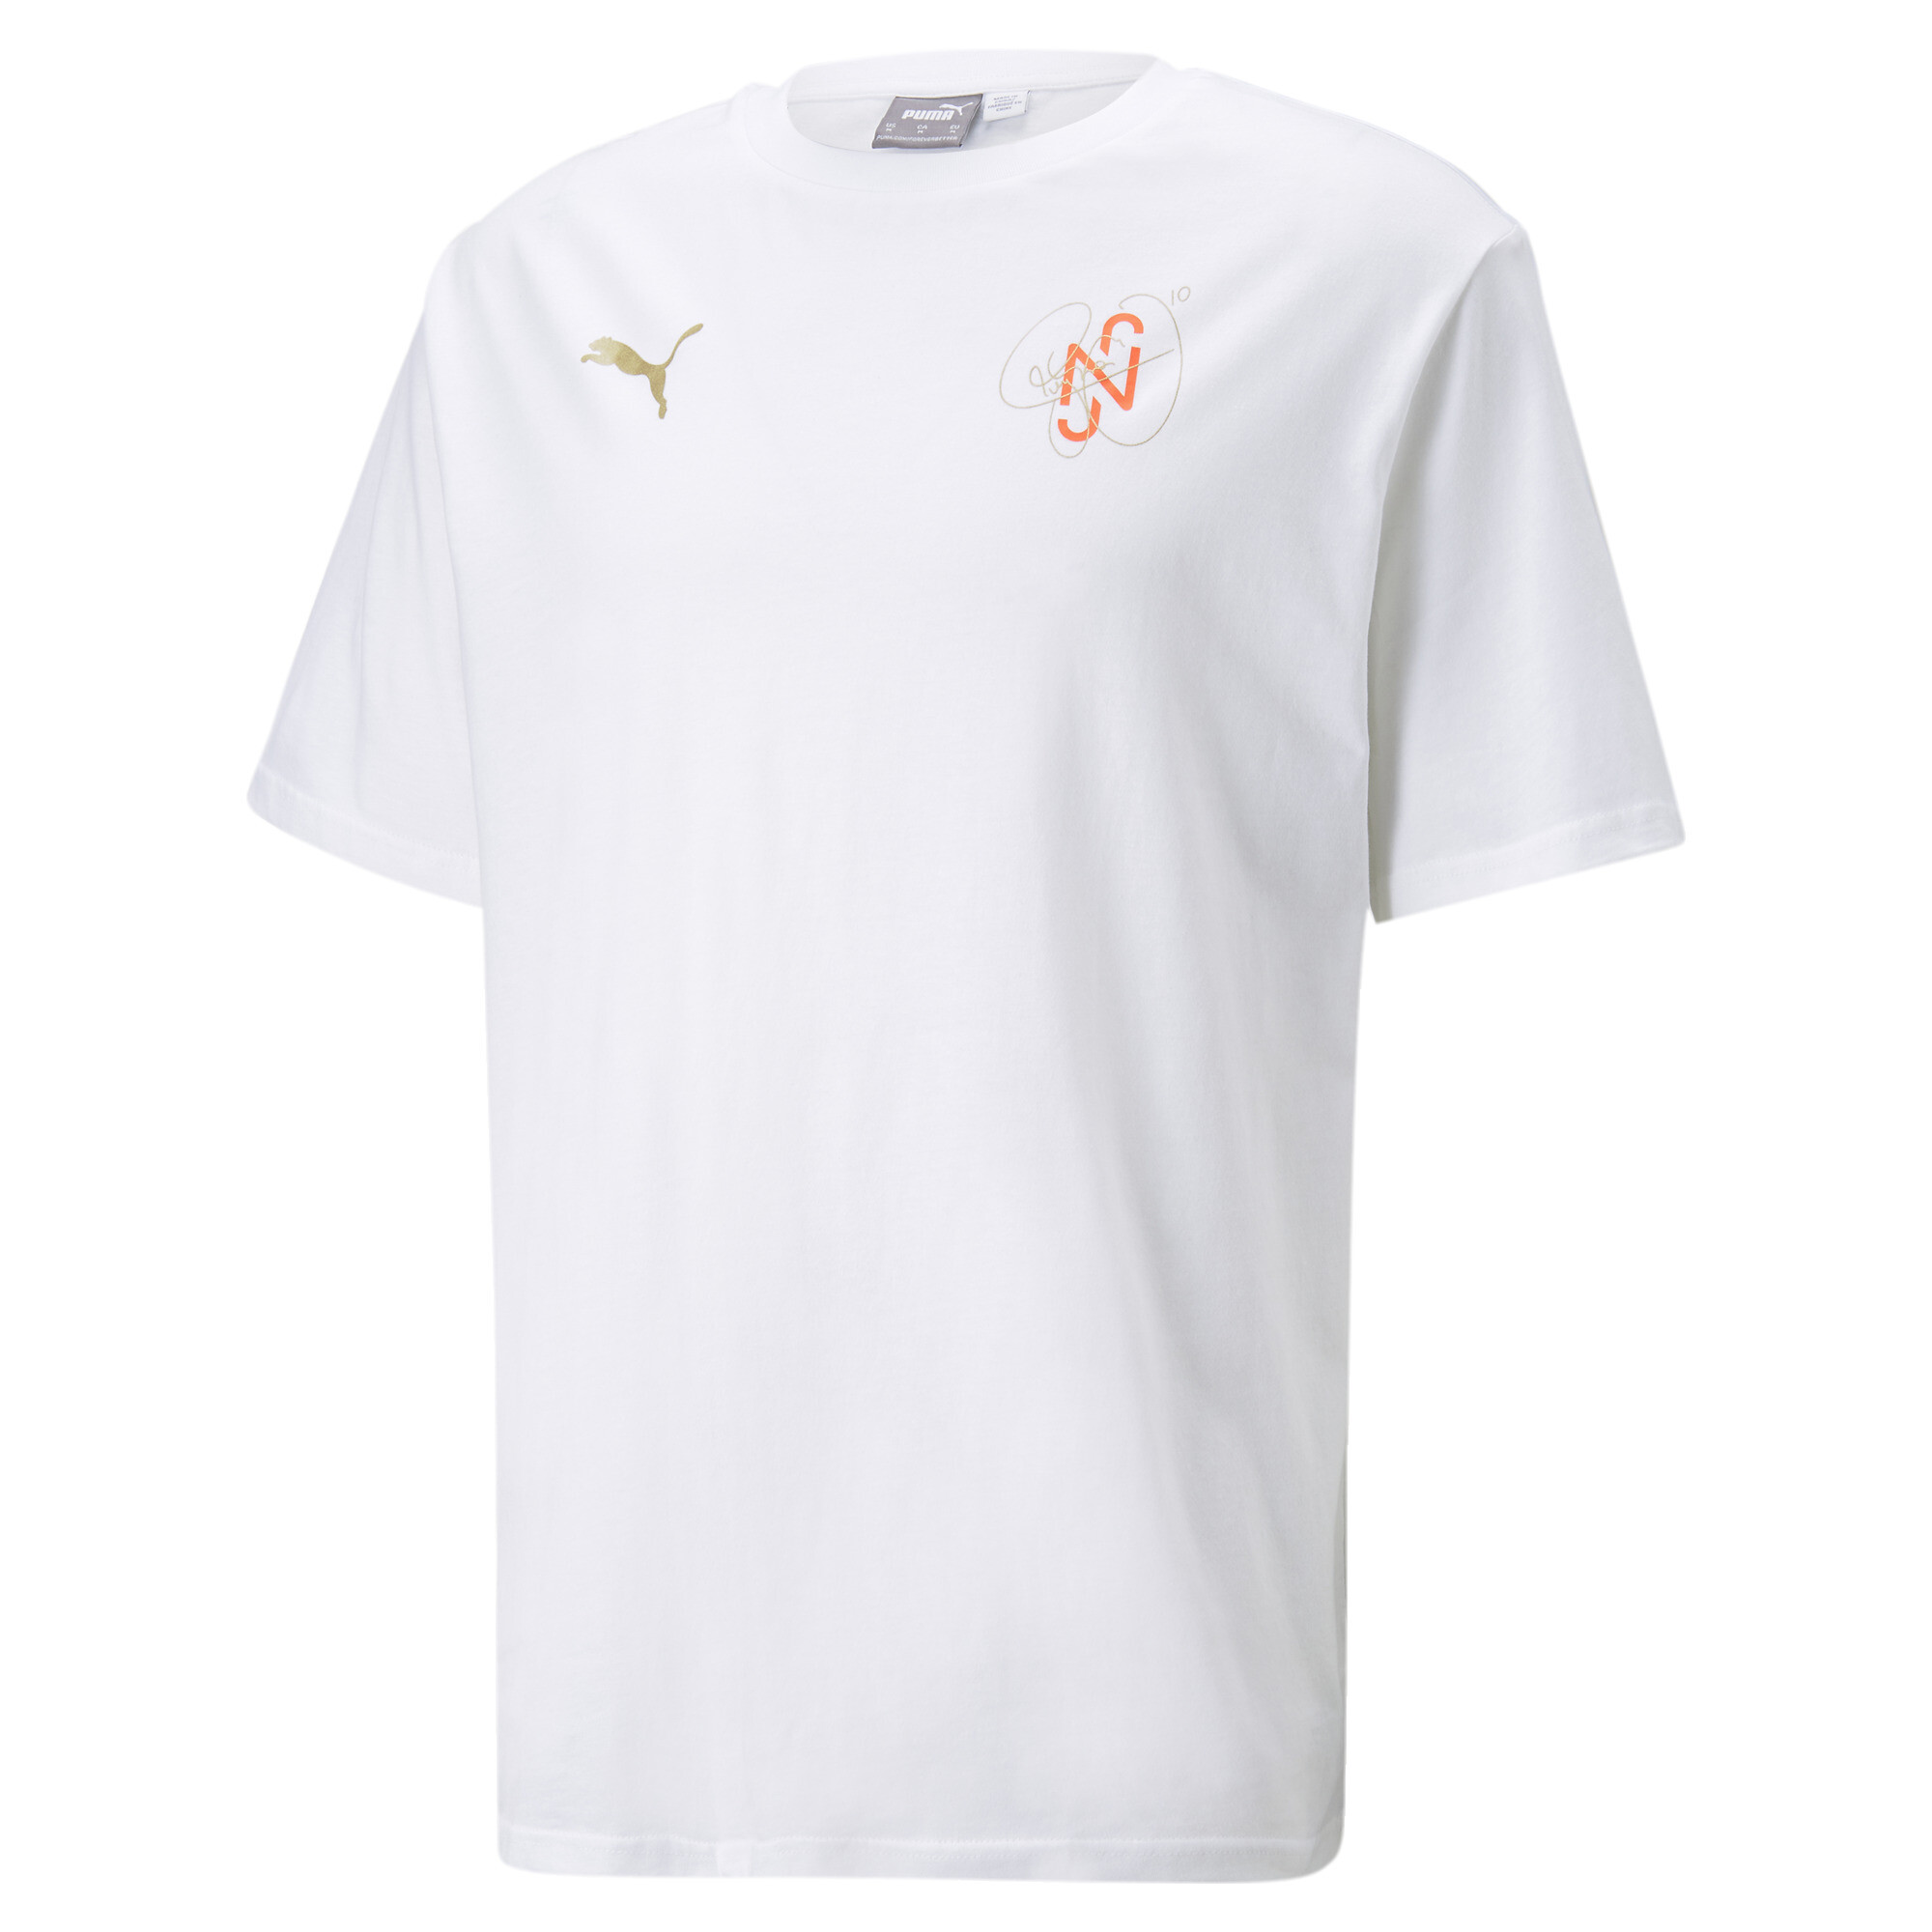  プーマ メンズ サッカー NJR ネイマール ダイヤモンド グラフィック 半袖 Tシャツ メンズ Puma White ｜PUMA.com